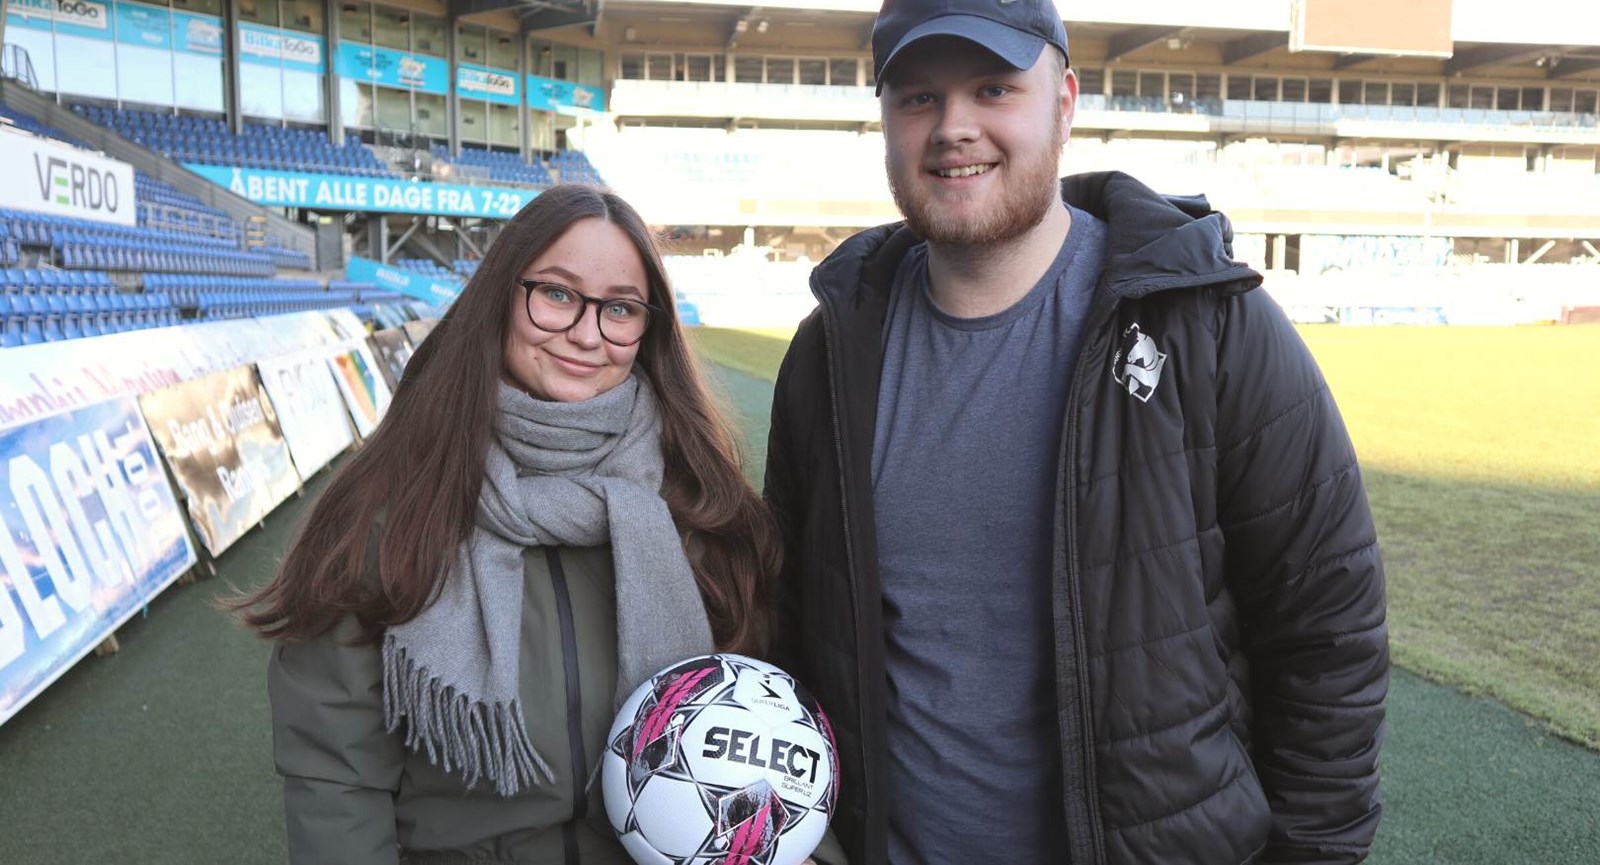 Serviceøkonomerne fra Erhvervsakademi Dania i Randers Line og Nicolaj står med en bold på Randers FCs stadion